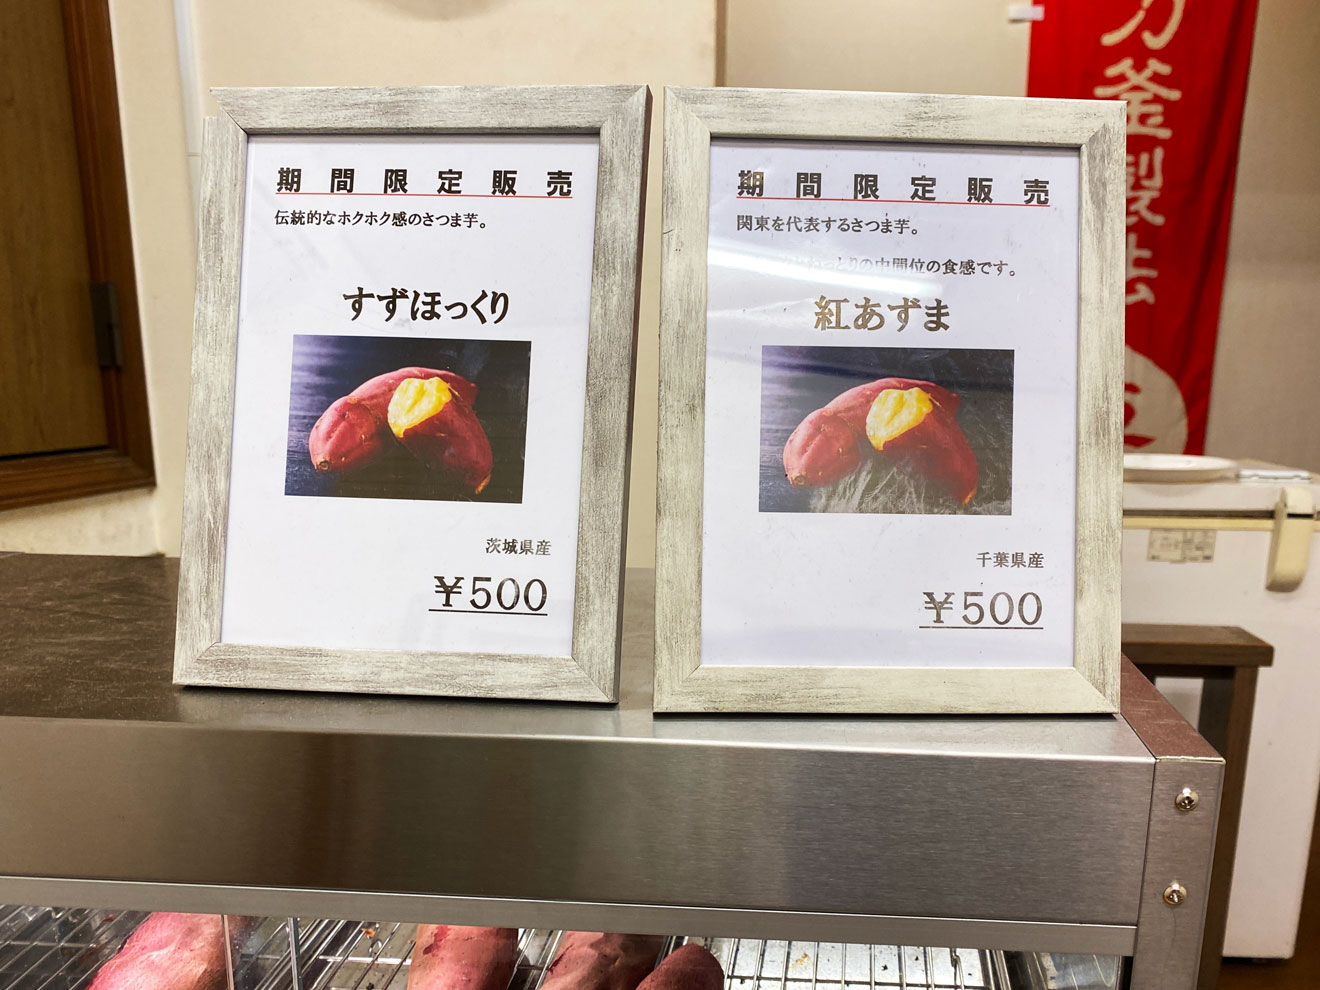 「焼き芋専門店 ふじ」の期間限定販売商品